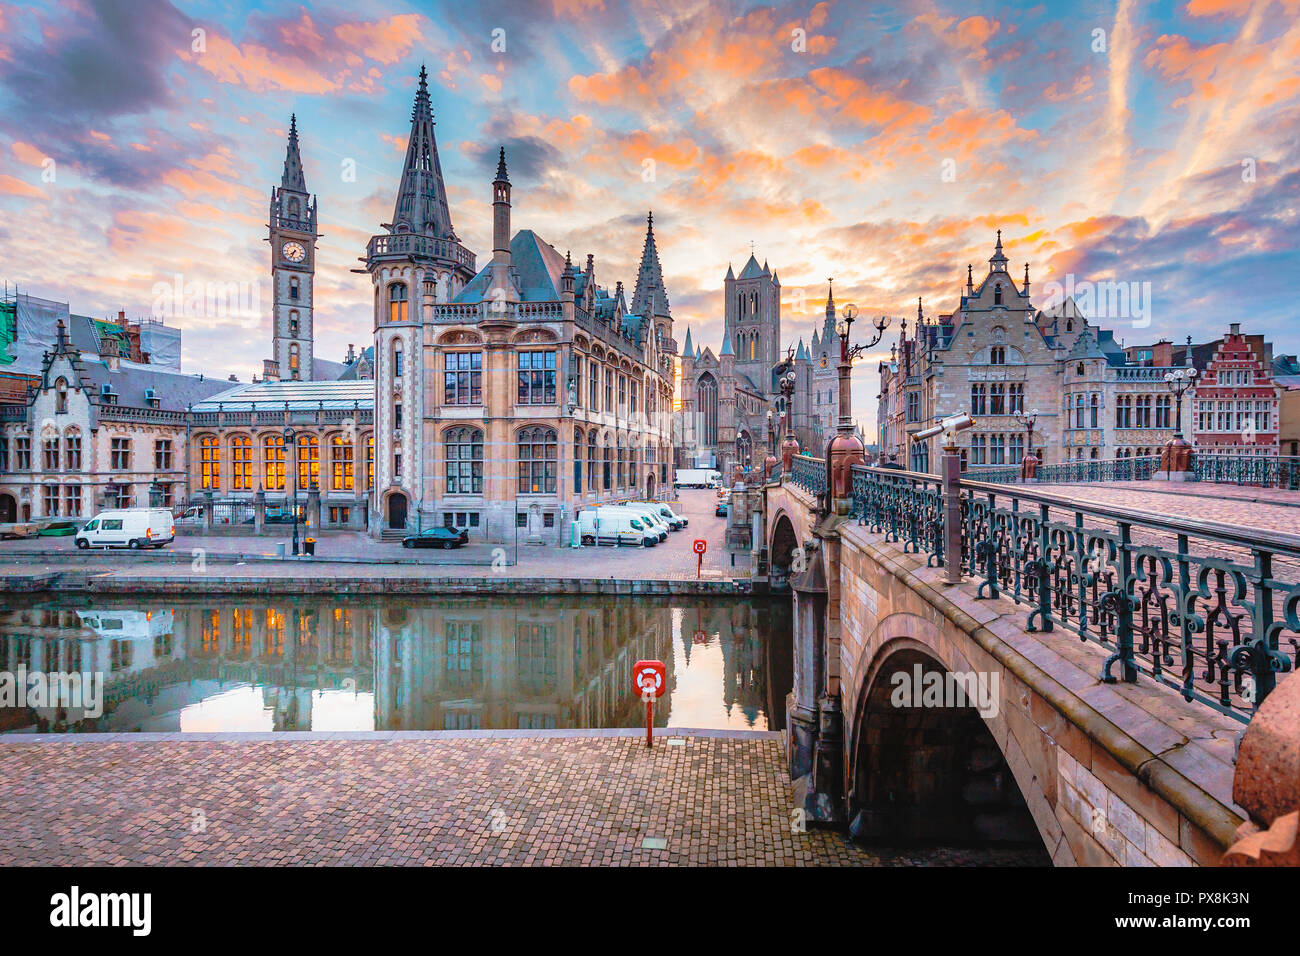 Vue panoramique sur le centre-ville historique de Gand avec la rivière Lys illuminée en beau crépuscule, Gand, Flandre orientale, Belgique Banque D'Images